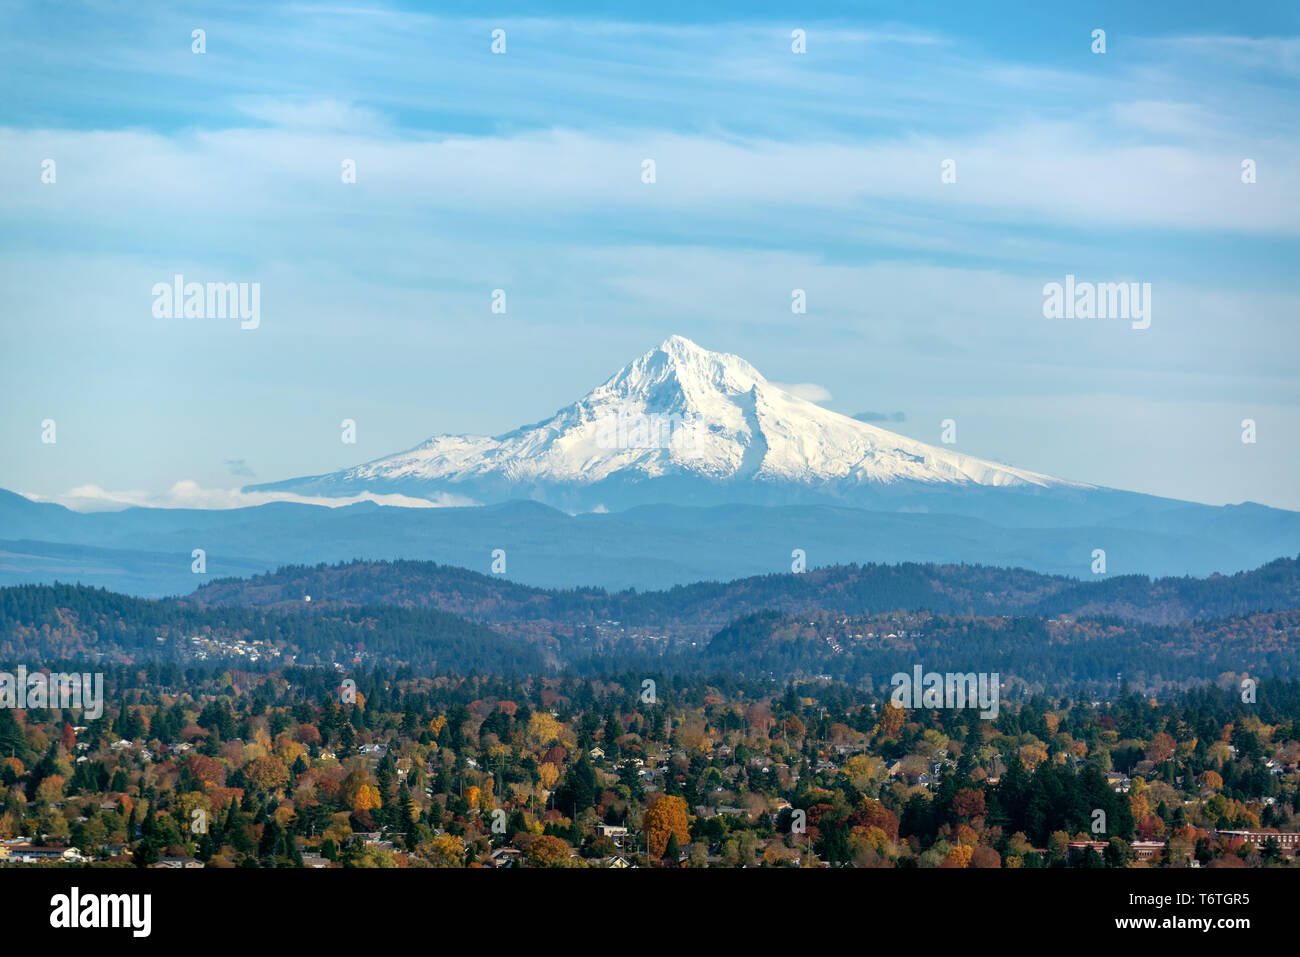 Vista de Mt. El capó y las colinas cubiertas de bosque visto desde Portland, Oregón Foto de stock